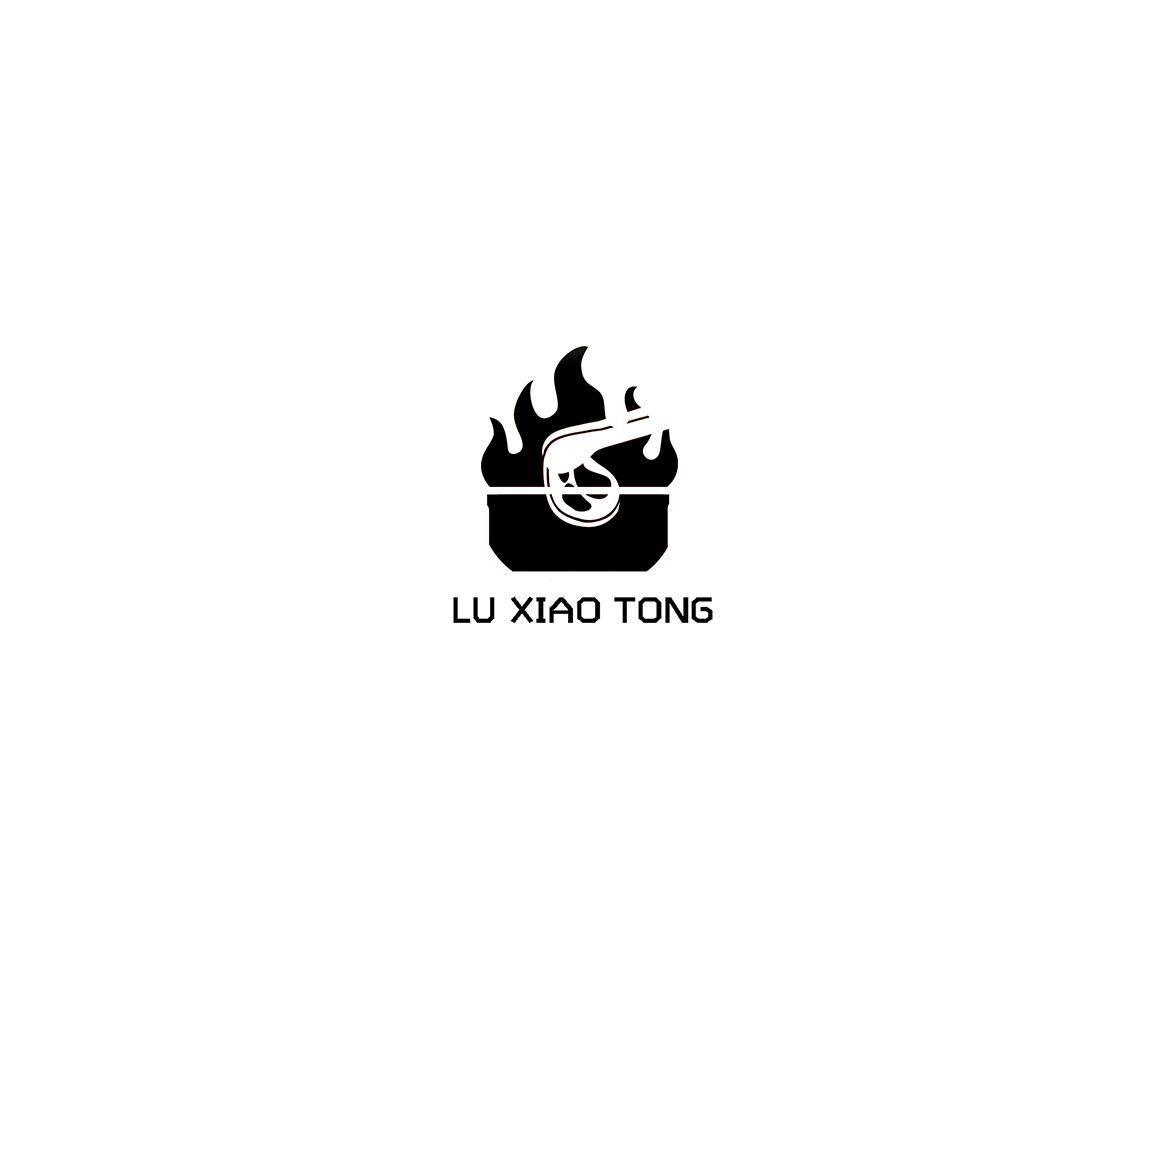 LU XIAO TONG